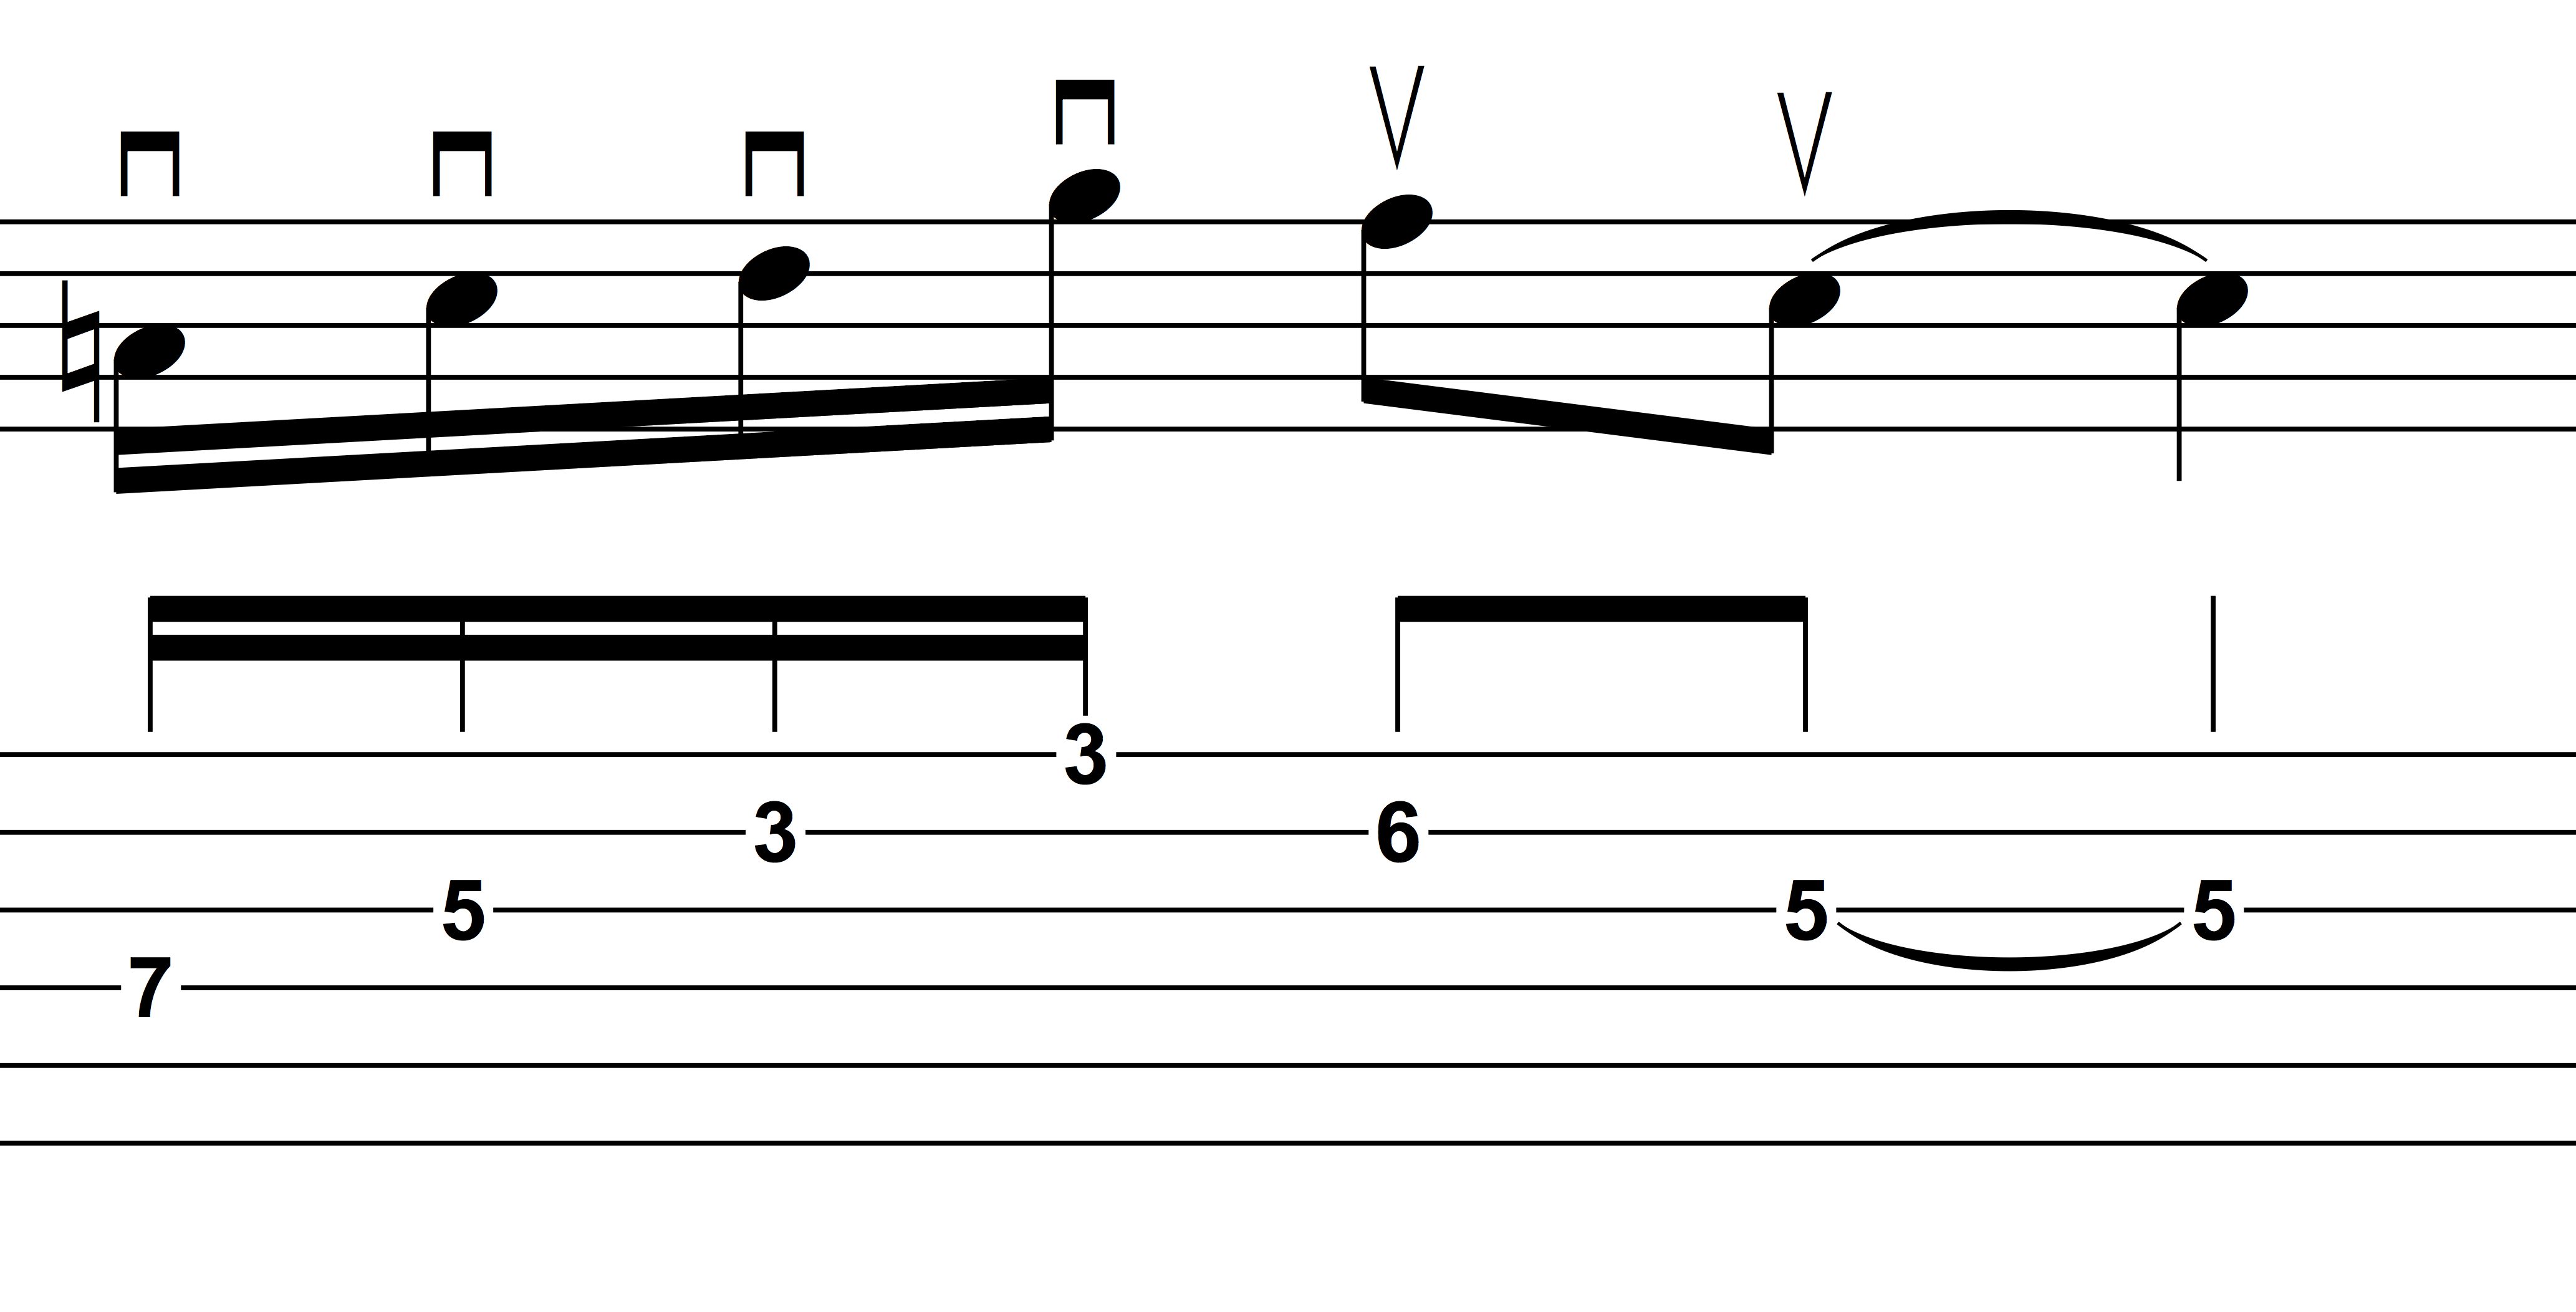 Trascrivere Charlie Parker. Guitar Prof.
Frase in sedicesimi con sviluppo verticale e sweep picking. Fmaj6/9
Primo esempio
